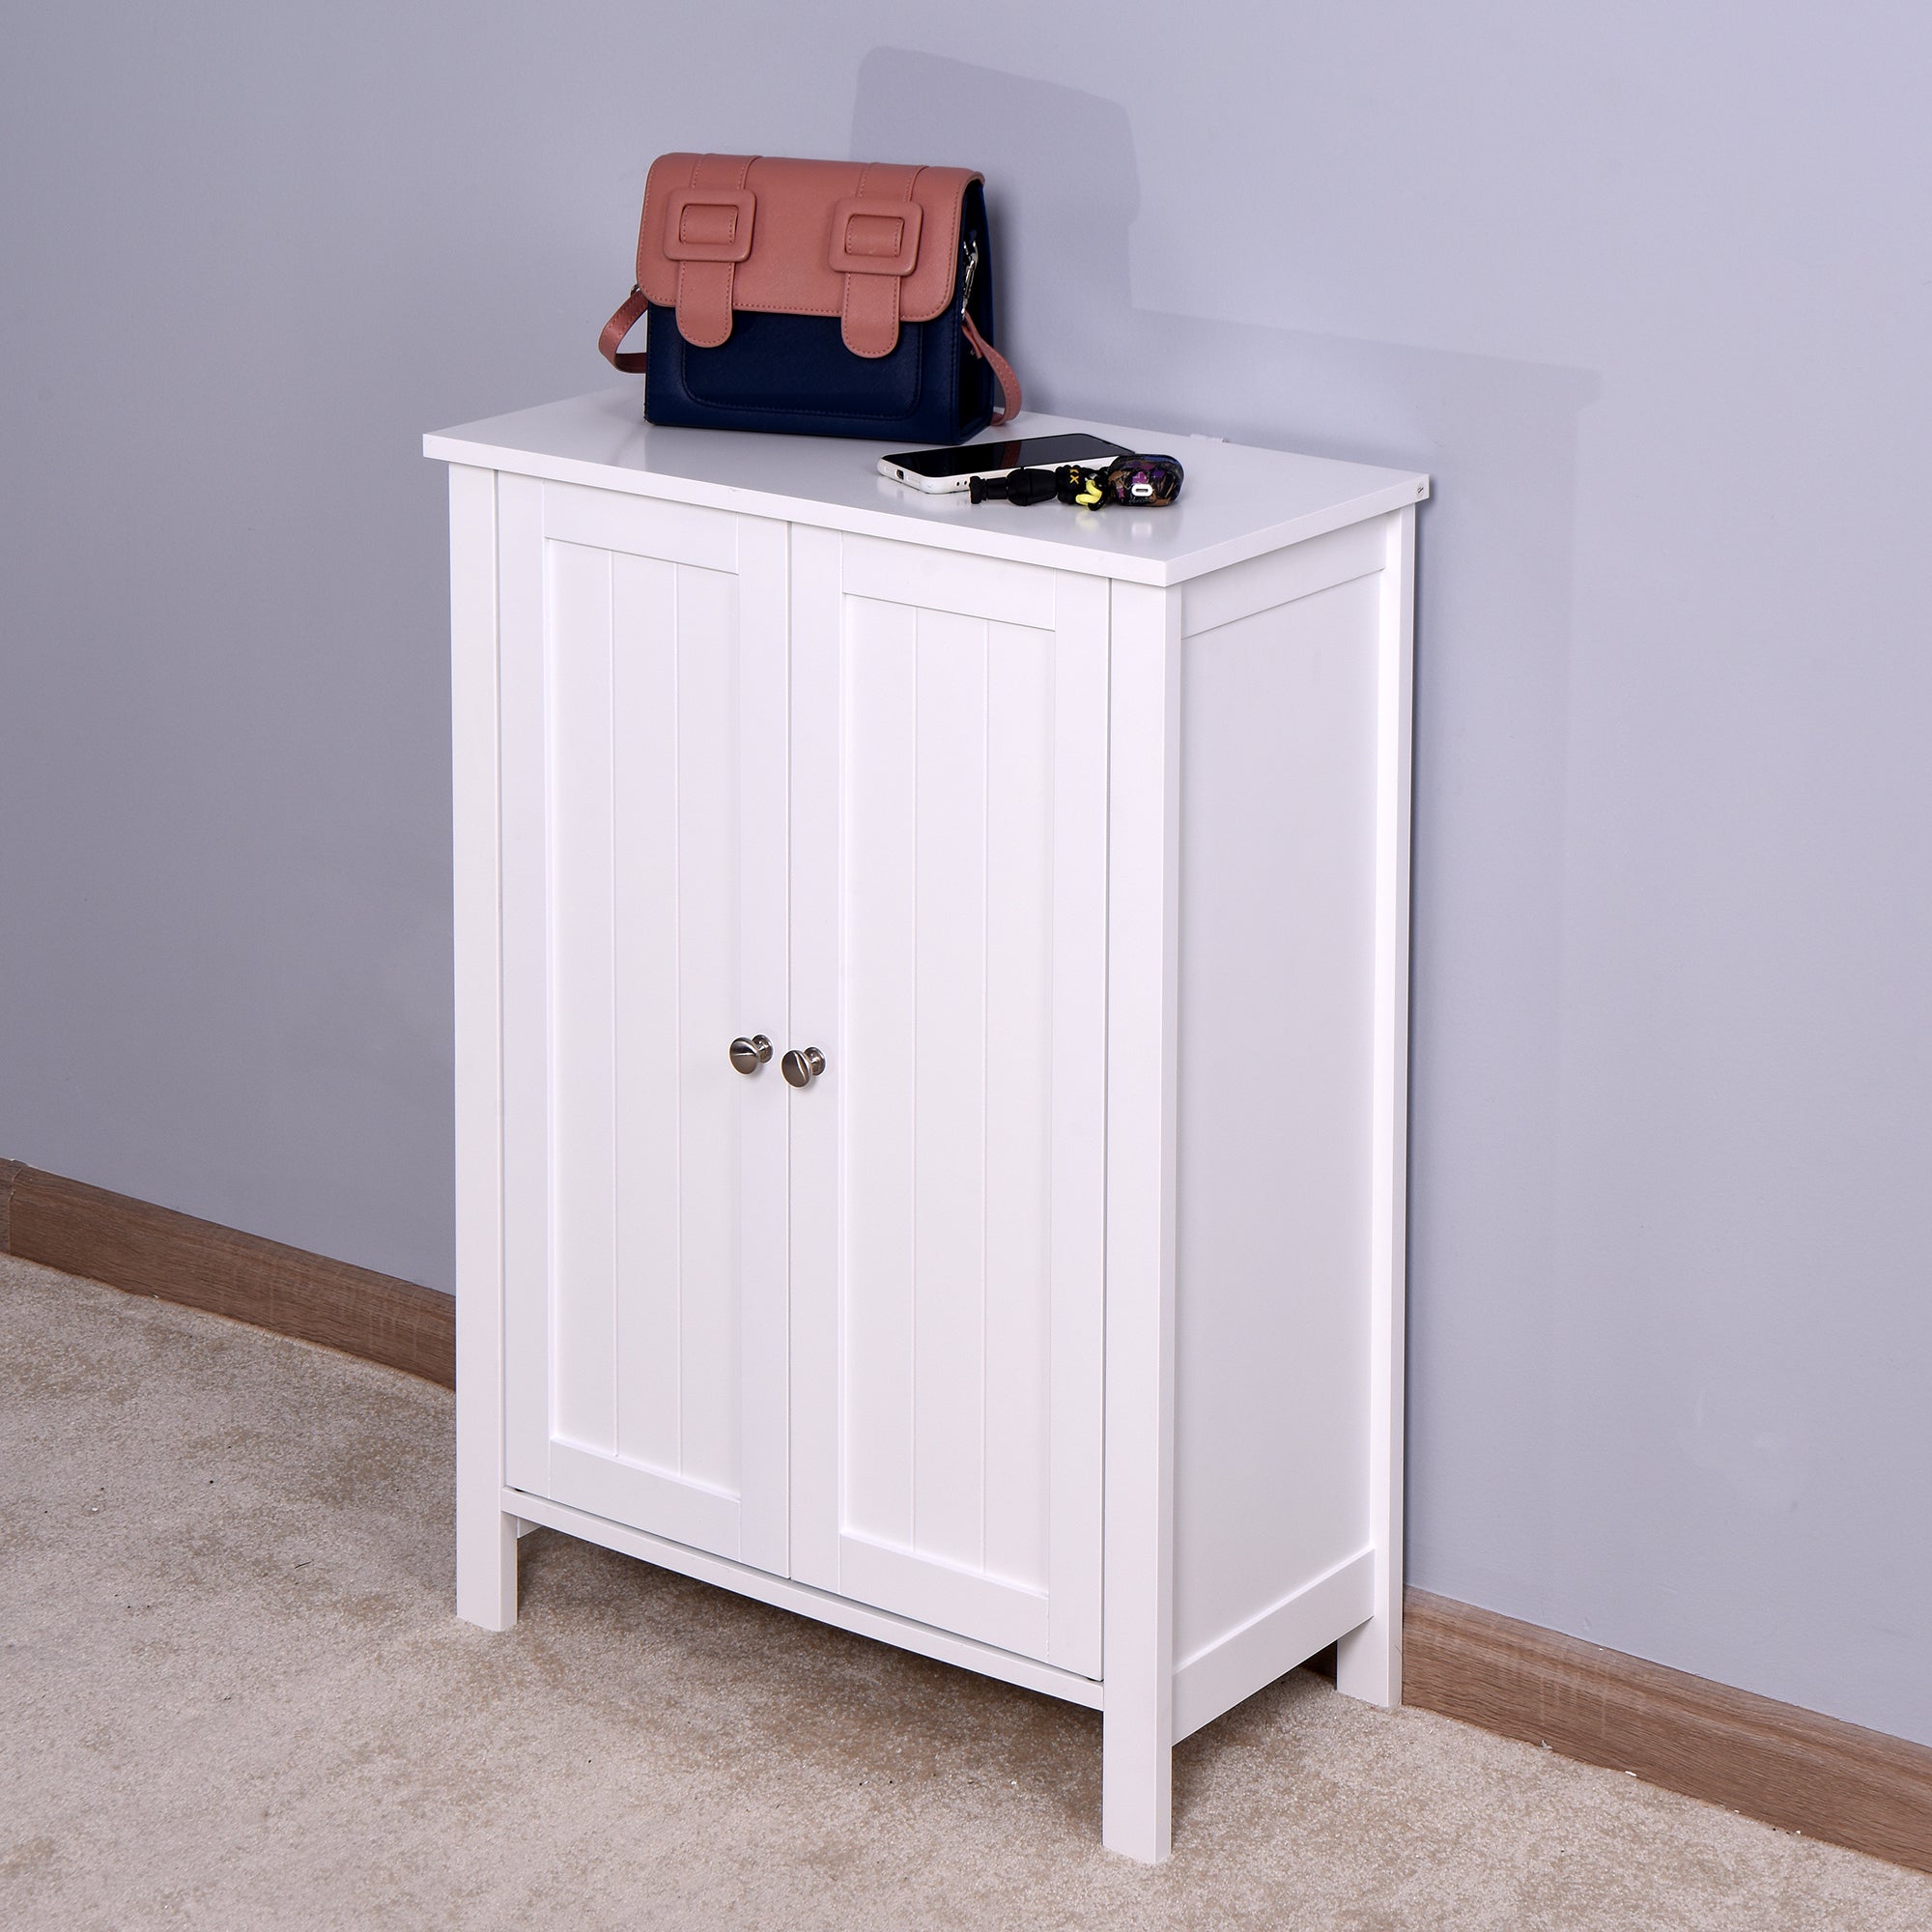 Floor Storage Cabinet with Double Door Adjustable Shelf